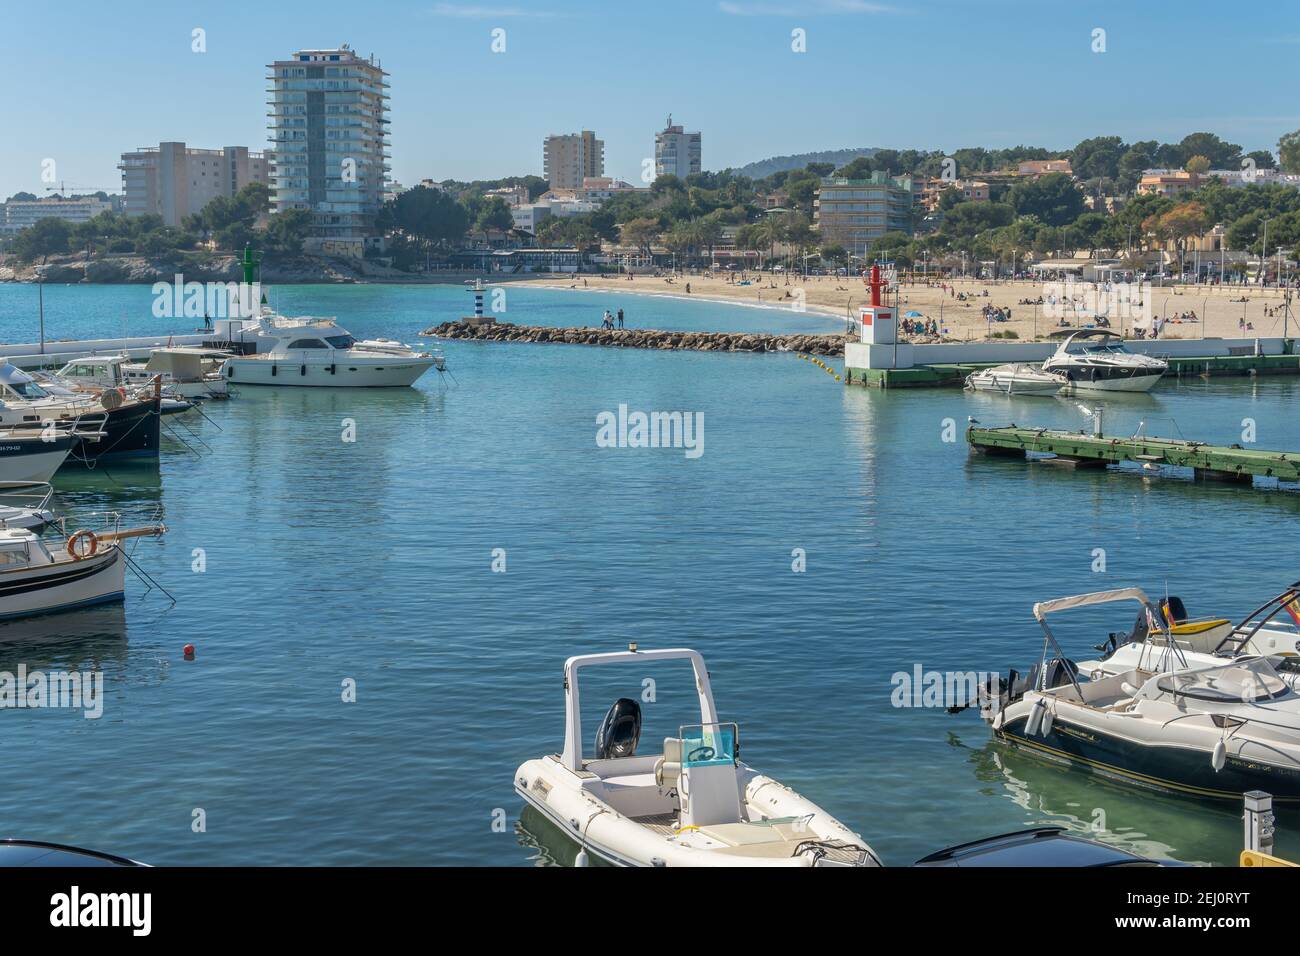 Palmanova, Spagna; febbraio 20 2021: Vista generale del porto turistico e della spiaggia della località di Palmanova in una giornata di sole, con le famiglie che si godono t Foto Stock